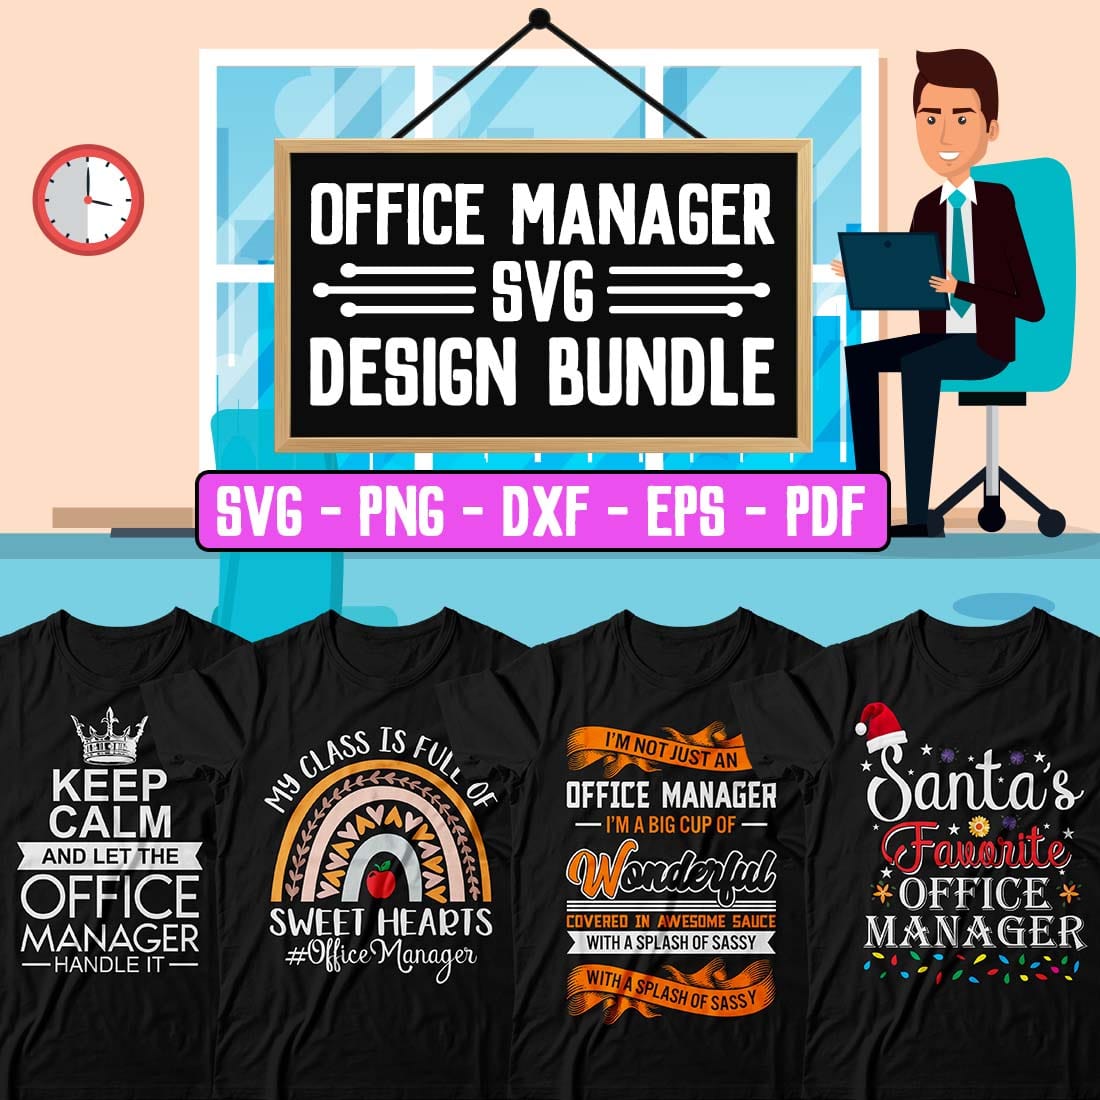 Office Manager SVG Design Bundle cover image.